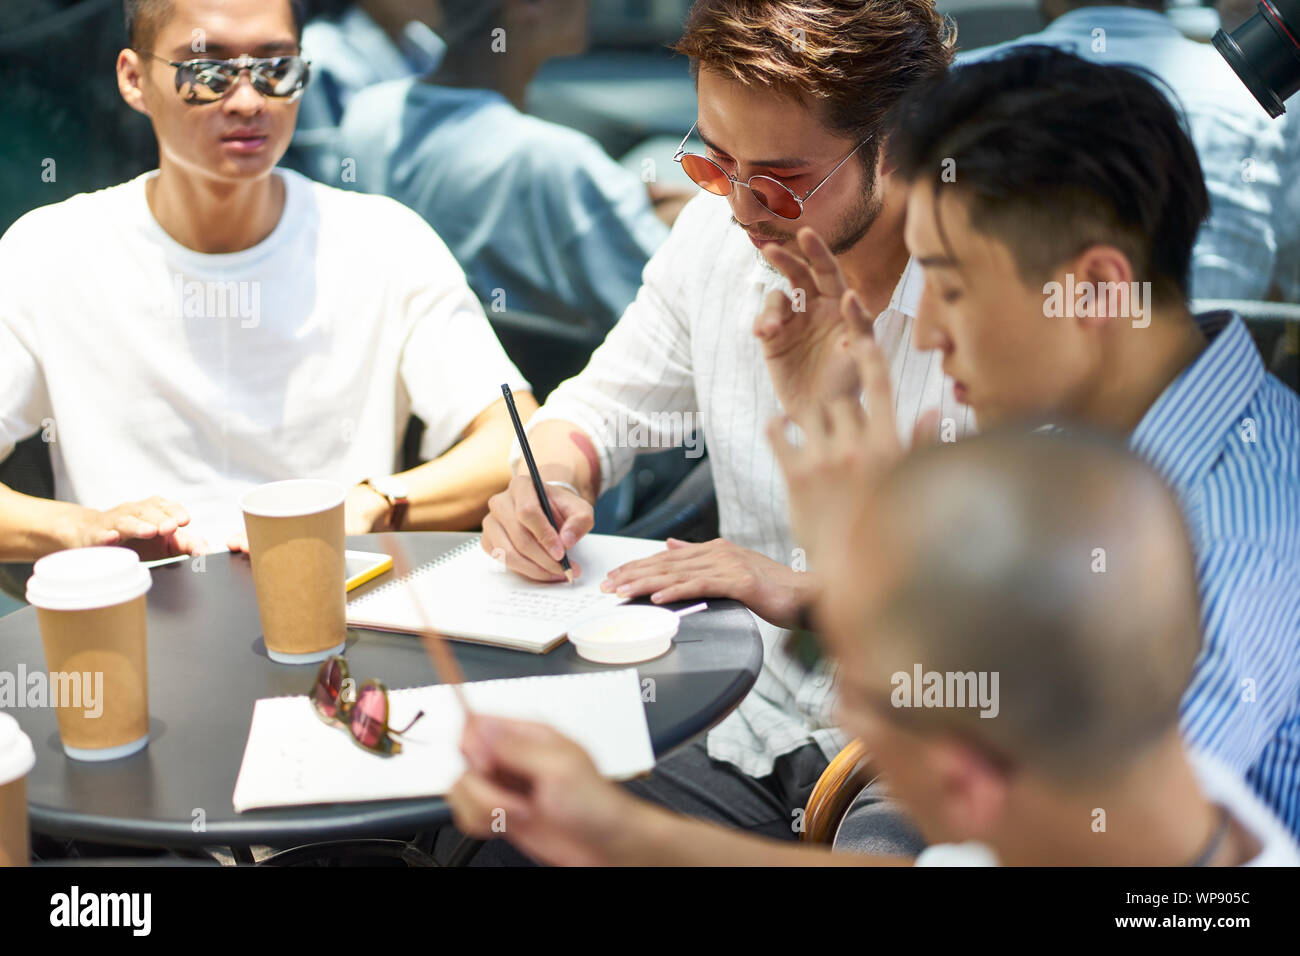 Gruppe von jungen asiatischen Studenten zusammen studieren in einem Coffee Shop Stockfoto